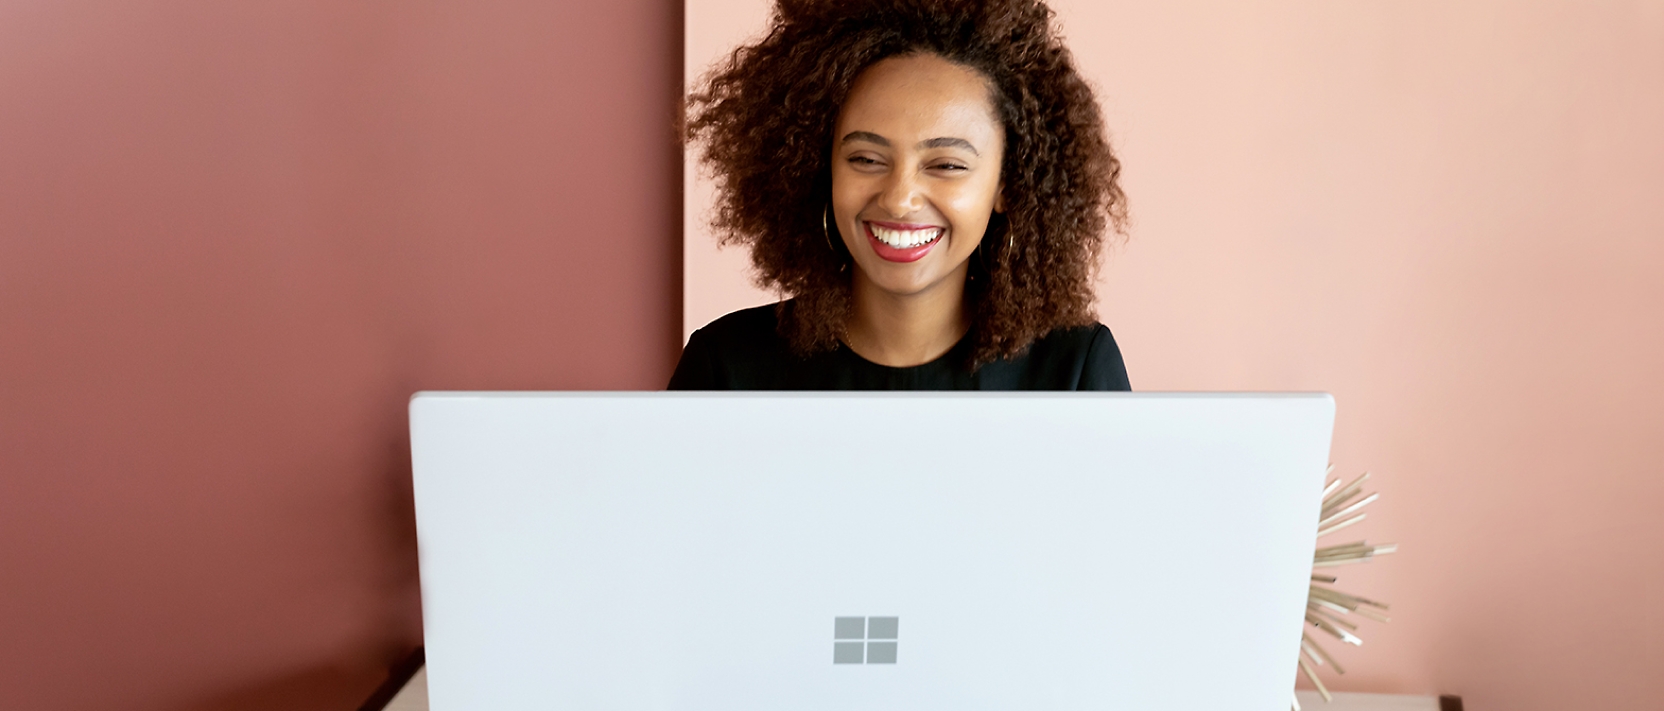 ผู้หญิงกำลังยิ้มแย้มขณะทำงานบนแล็ปท็อป